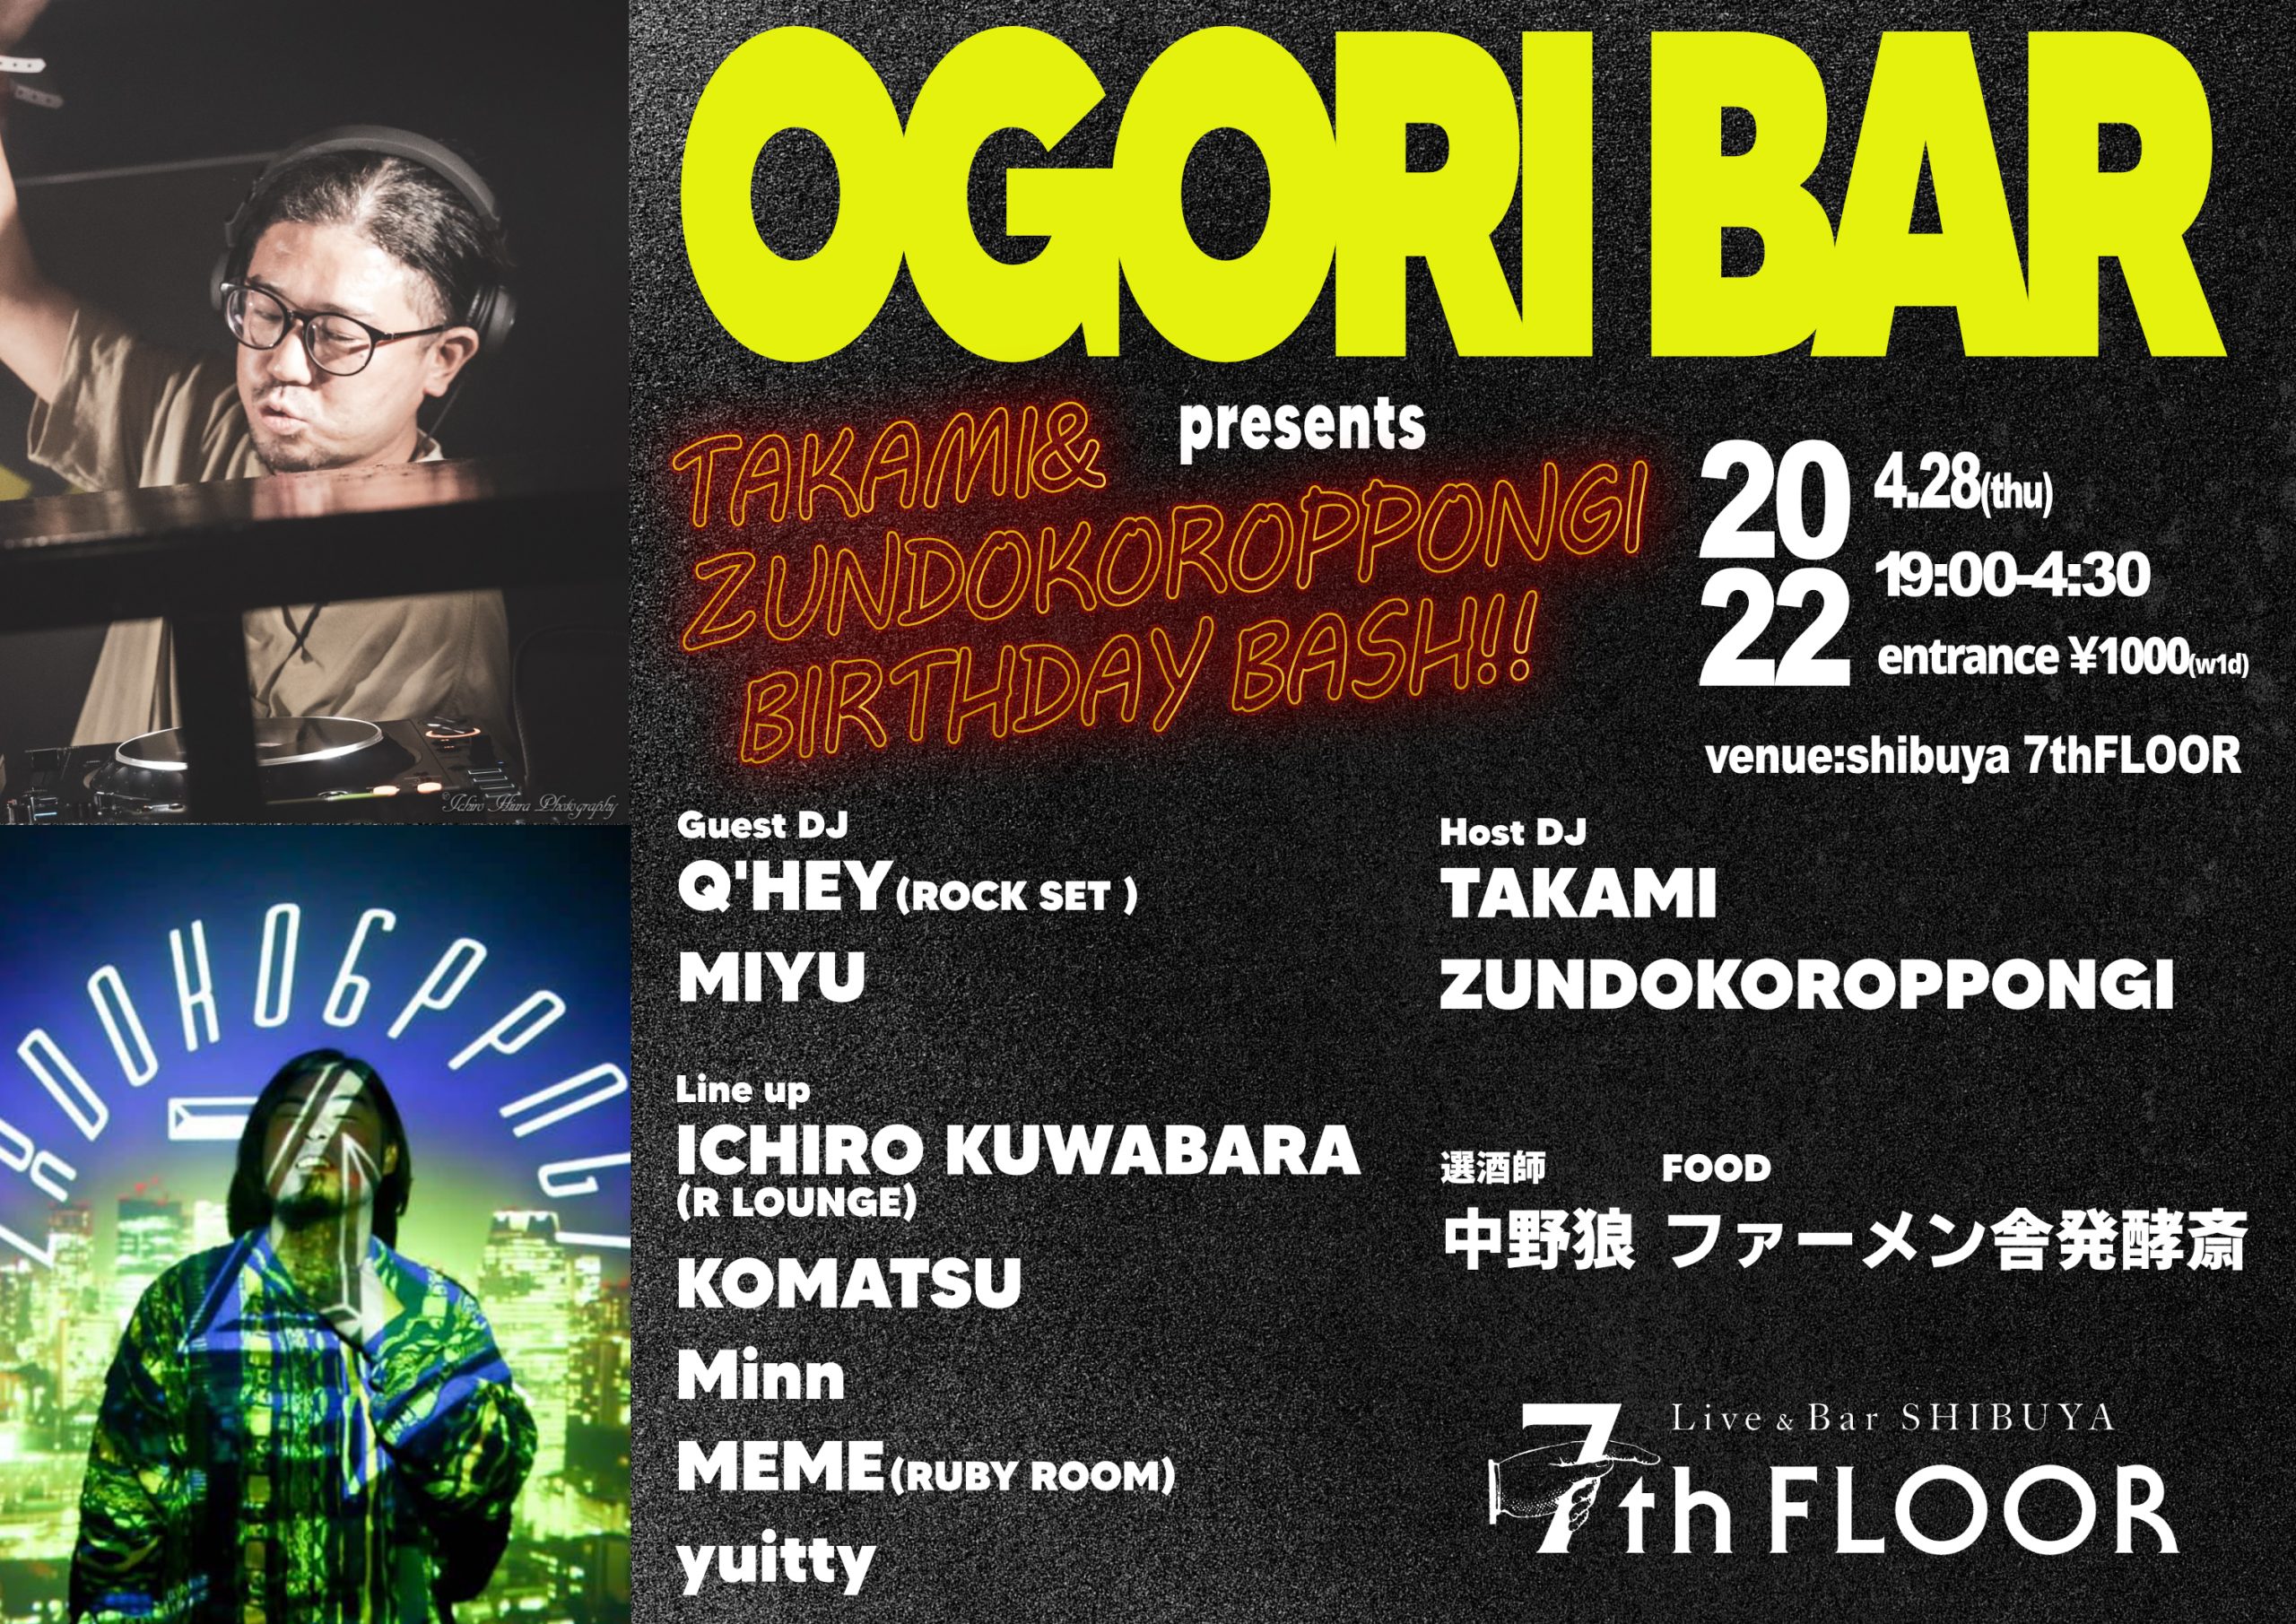 ogori bar presents TAKAMI&ZUNDOKOROPPONGI BIRTHDAY BASH!!